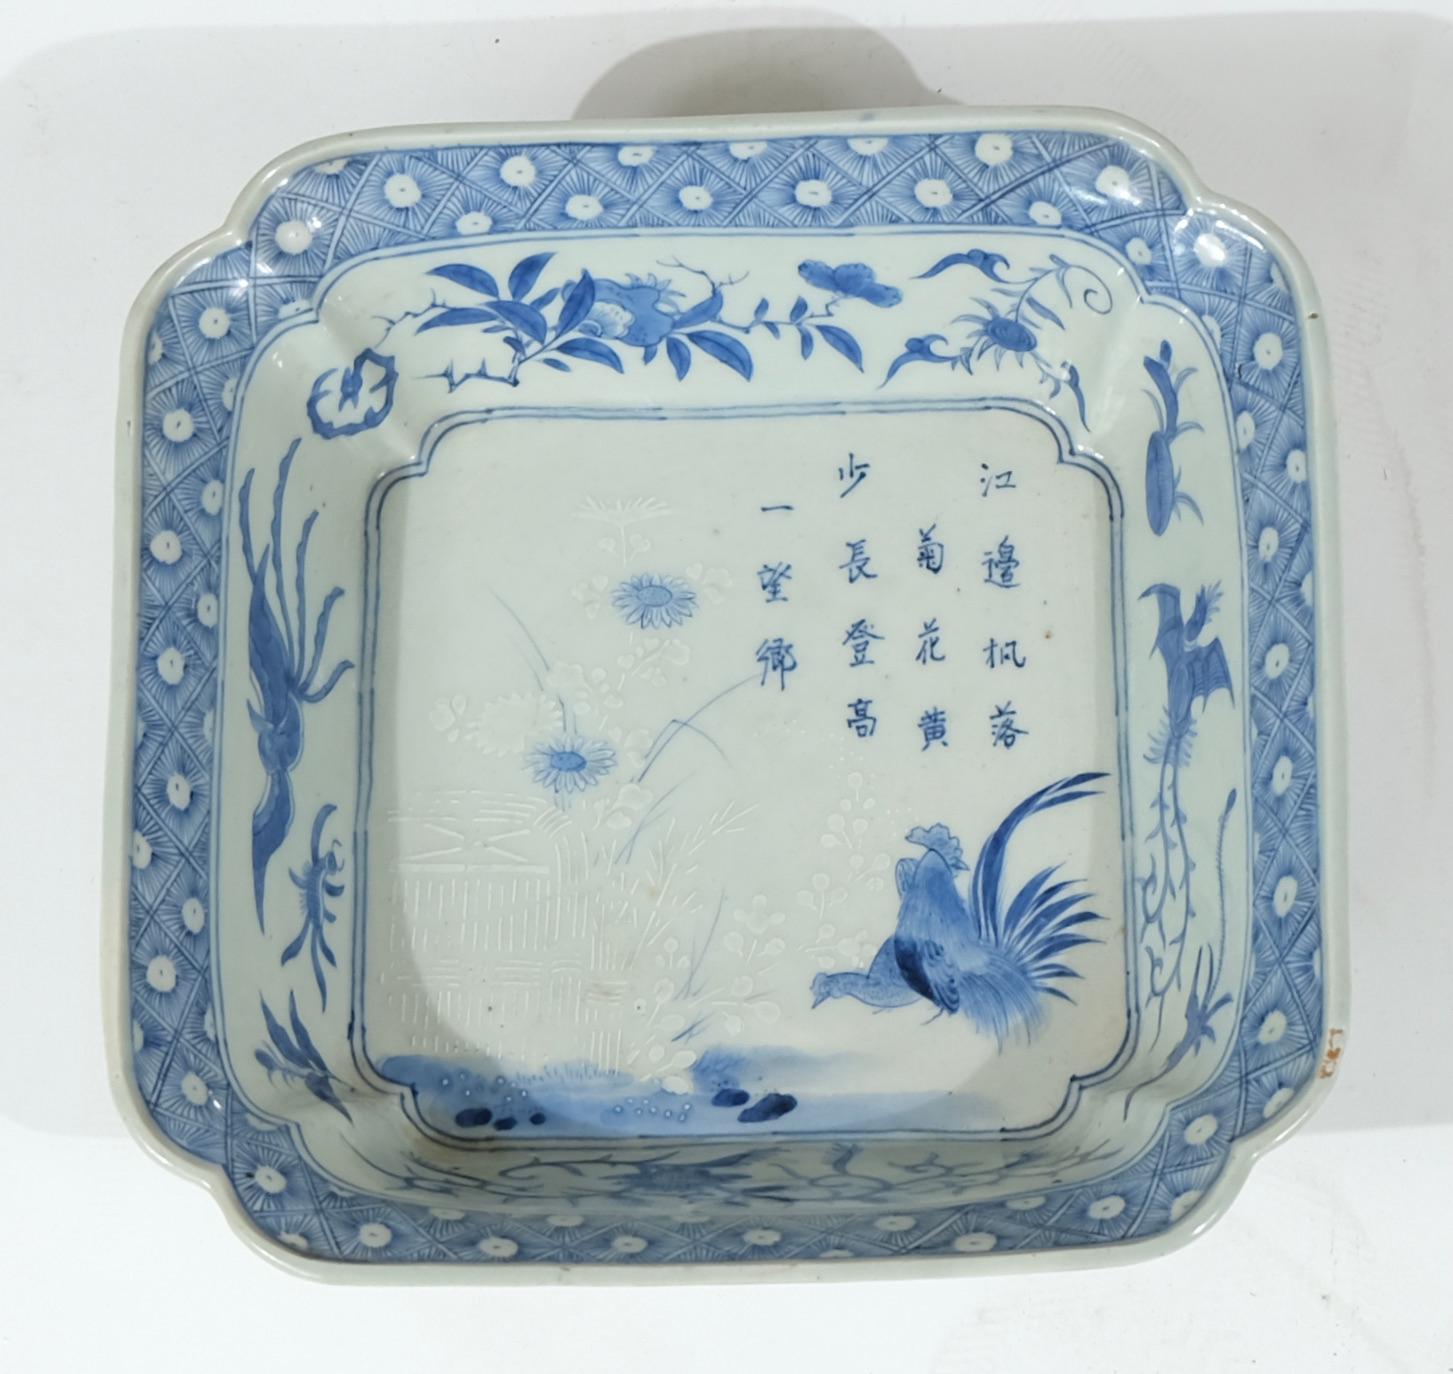 Un bol rectangulaire en porcelaine japonaise décoré en bleu et blanc. Motifs d'un poème, d'un coq et d'une poule.
Une très belle pièce de porcelaine japonaise. Le motif et l'état sont excellents.